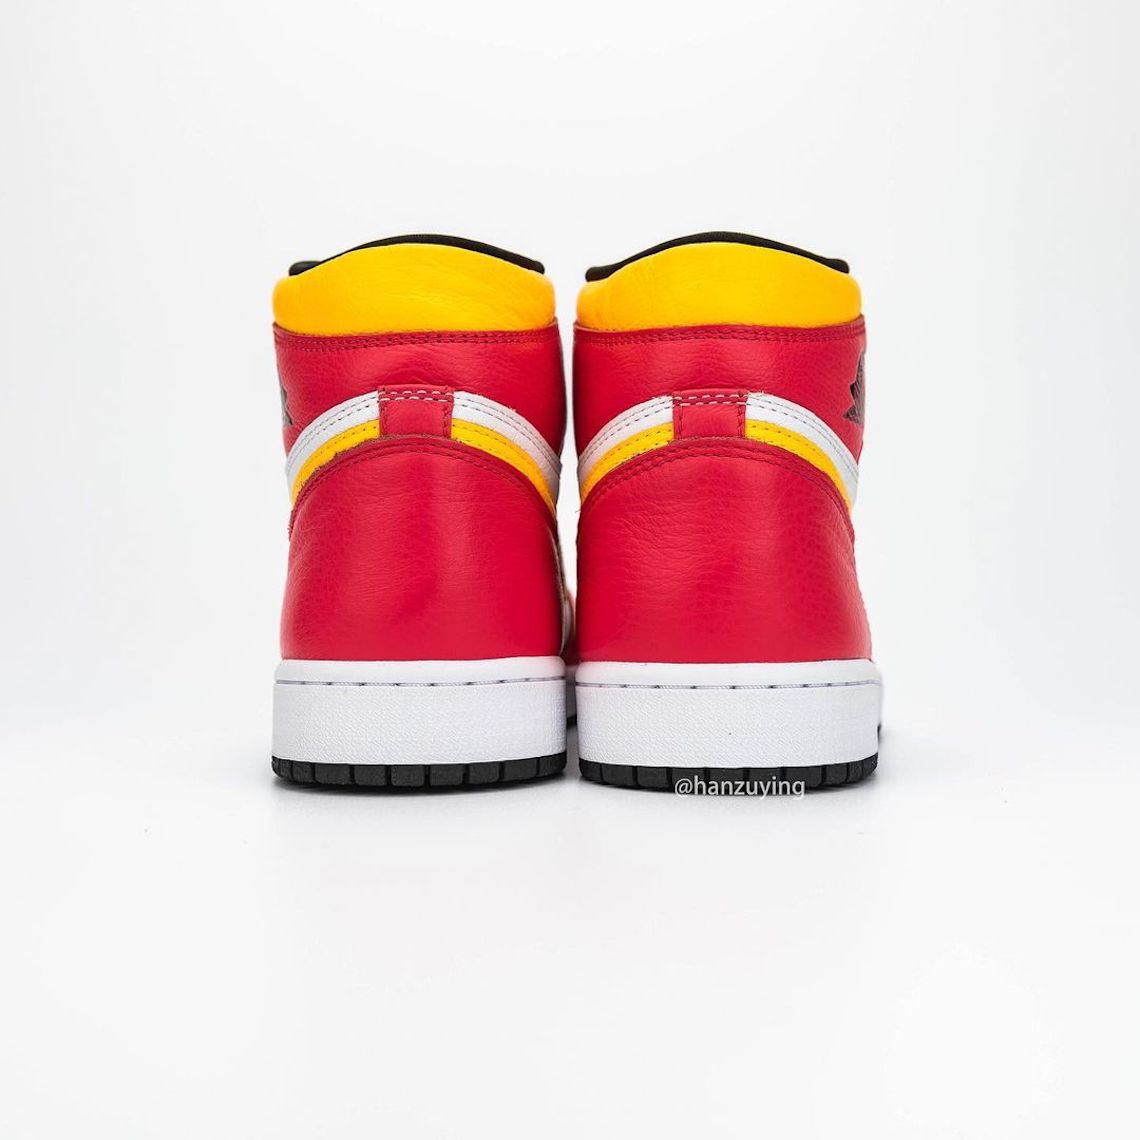 Air Jordan 1 Retro High OG Fusion Red 555088-603 | SneakerNews.com